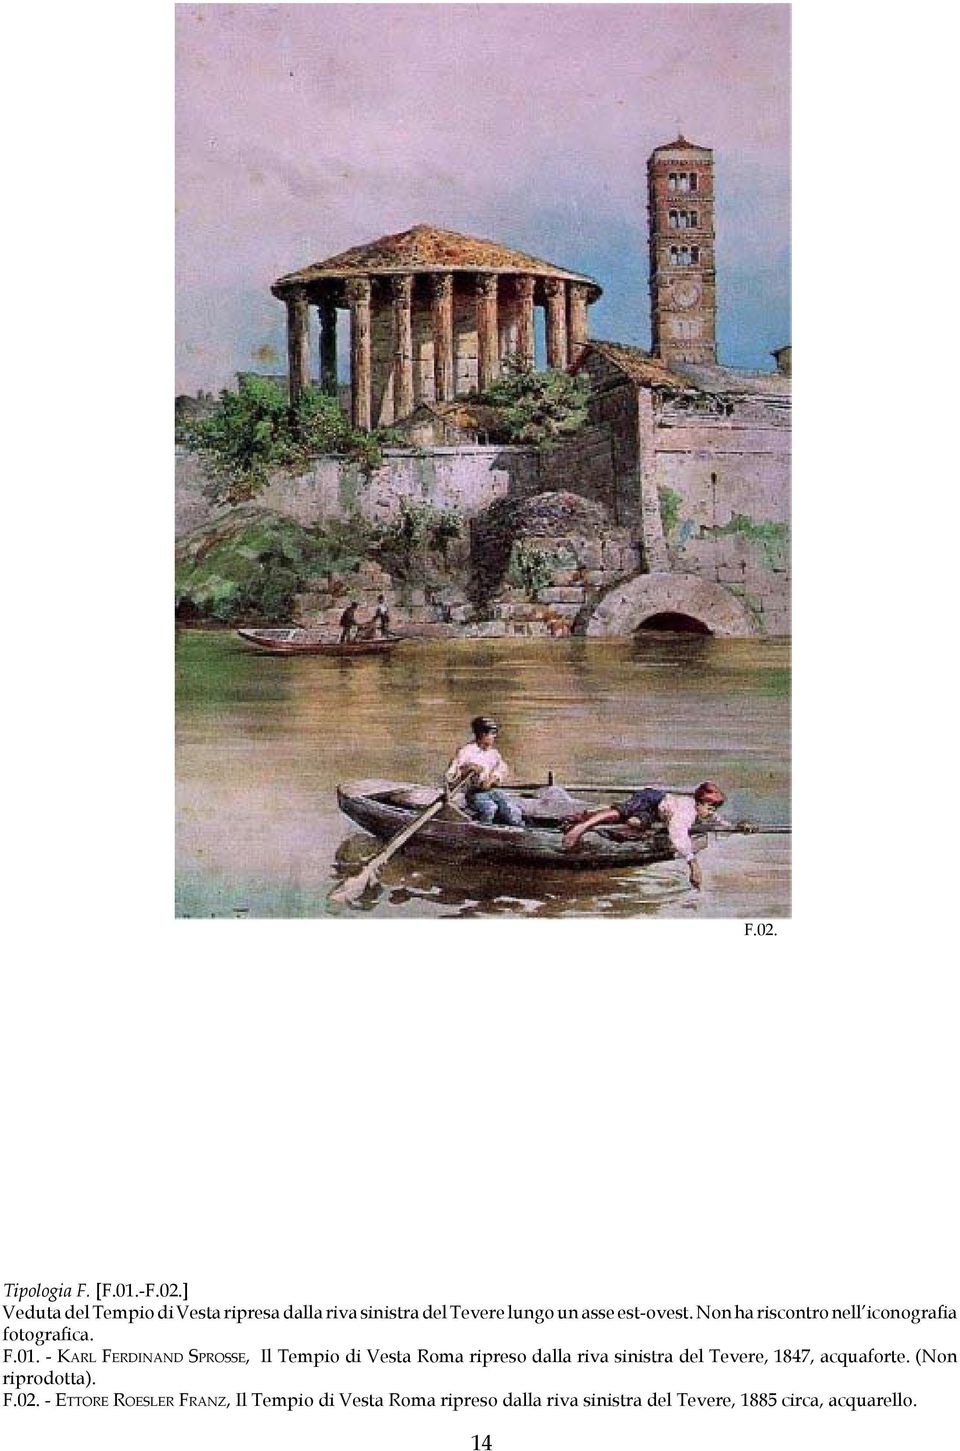 - Ka r l Fe r d i n a n d Sprosse, Il Tempio di Vesta Roma ripreso dalla riva sinistra del Tevere, 1847,